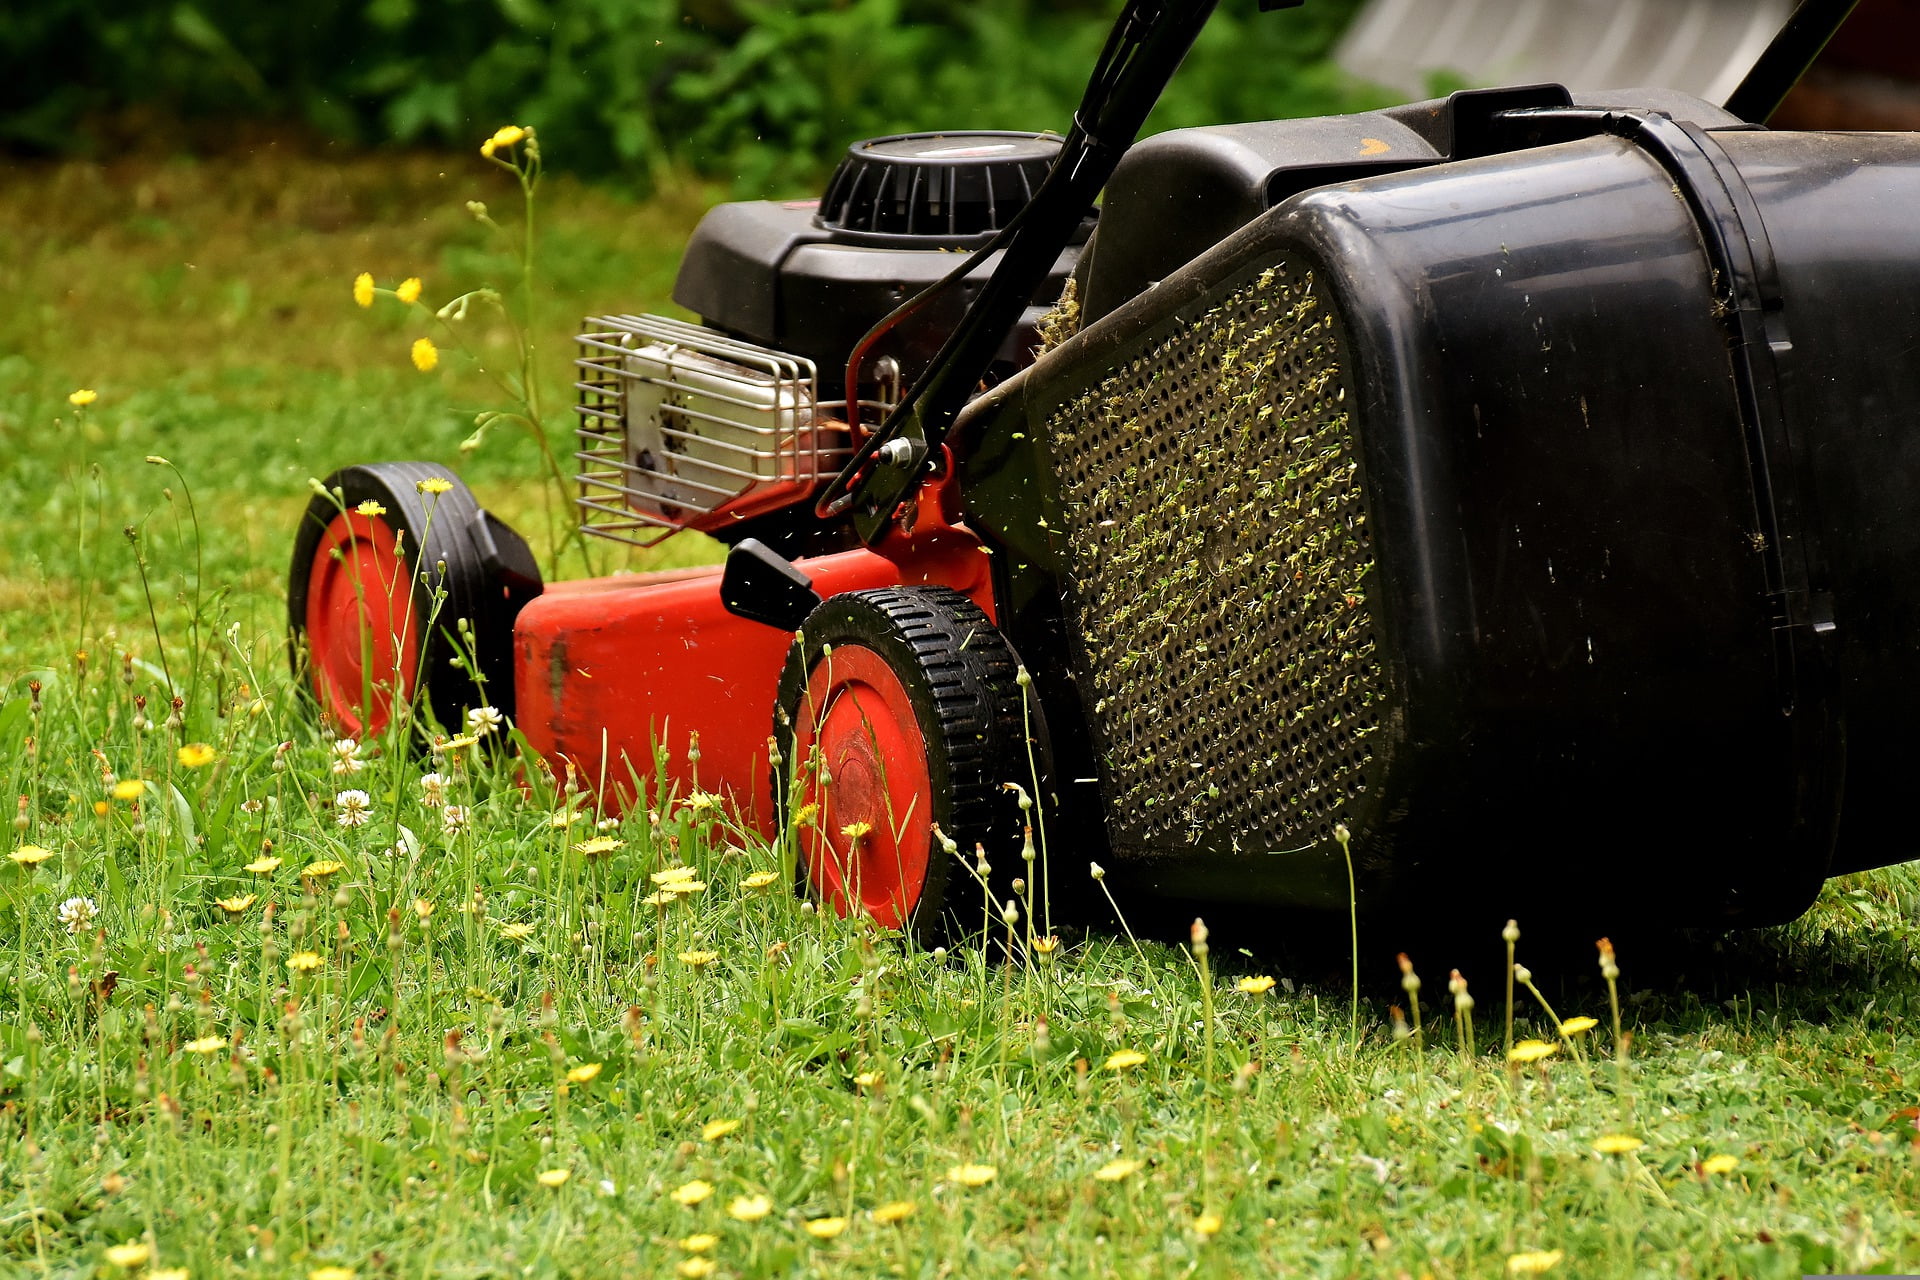 fix a lawn mower that overheats